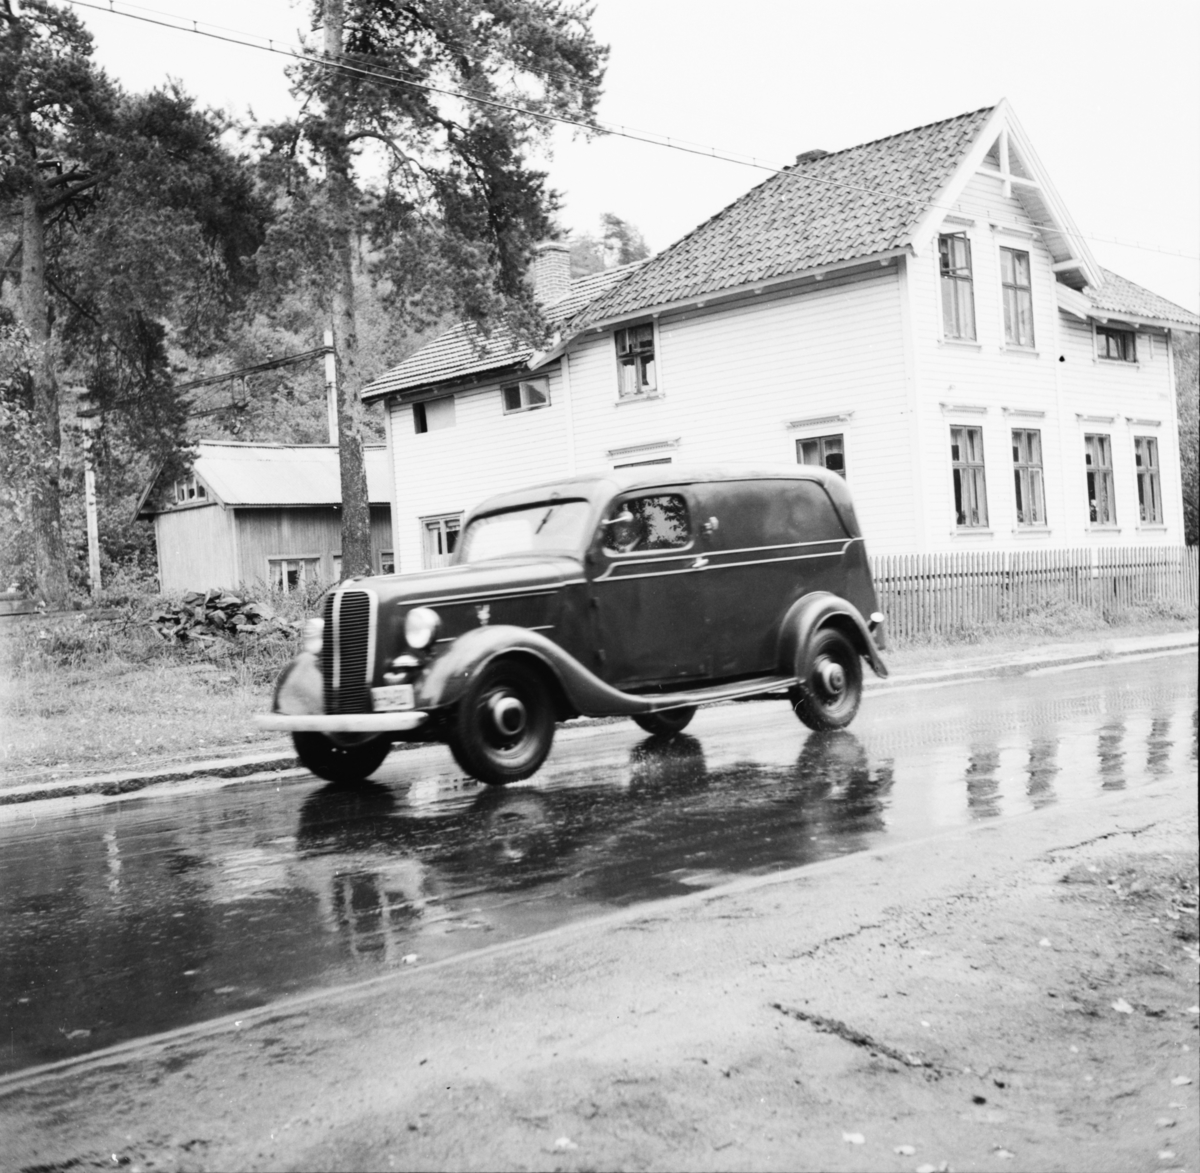 Vardens arkiv. "Trafikkontroll på Bøleveien". 09.09.1953.
Ford 1937 V8 varebil på lett lastebilunderstell. Norskbygget karosseri.